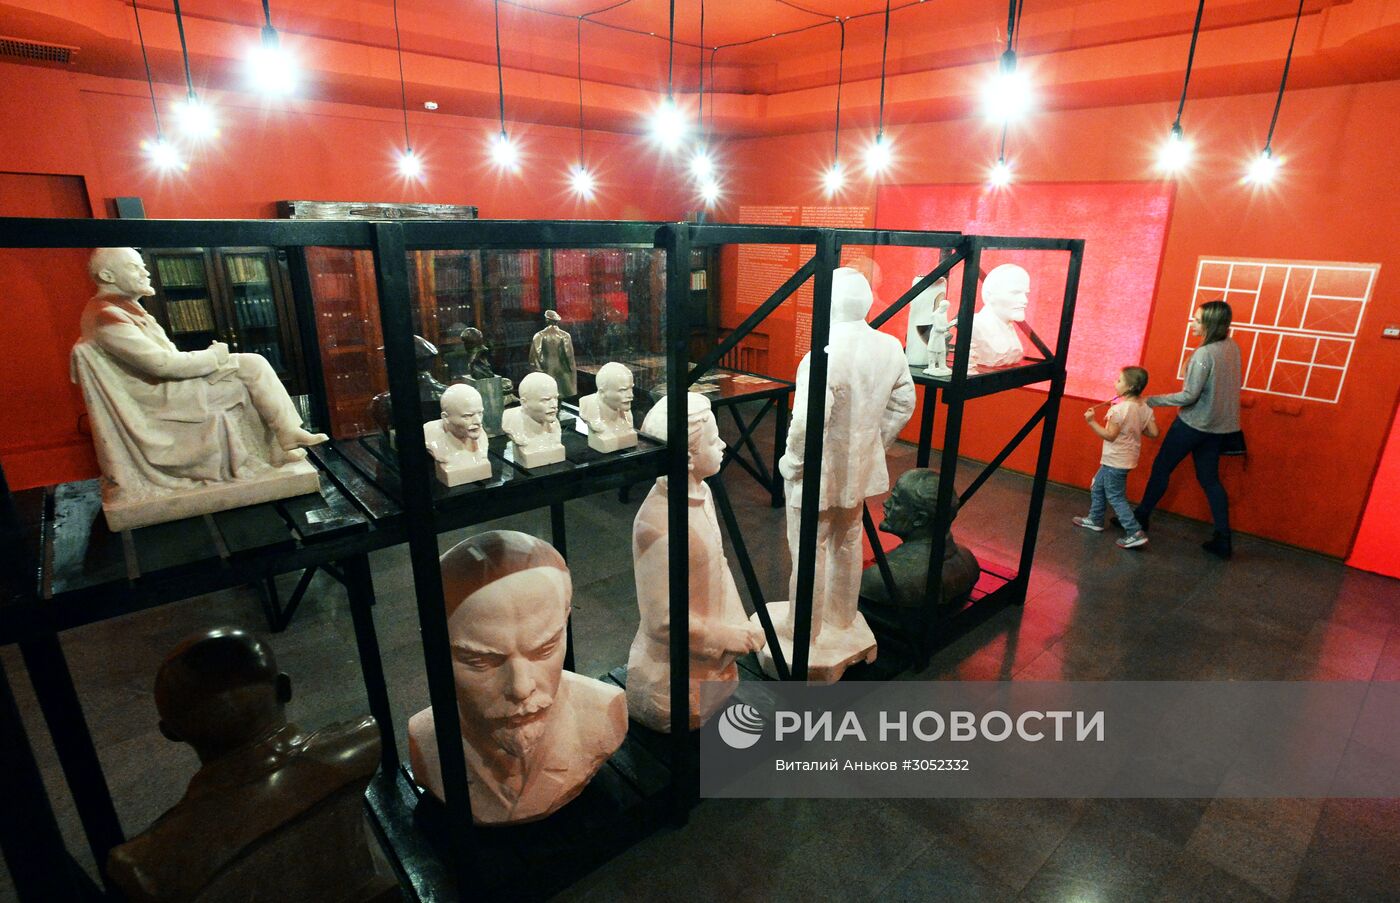 Выставка "LENIN. Образ вождя" во Владивостоке